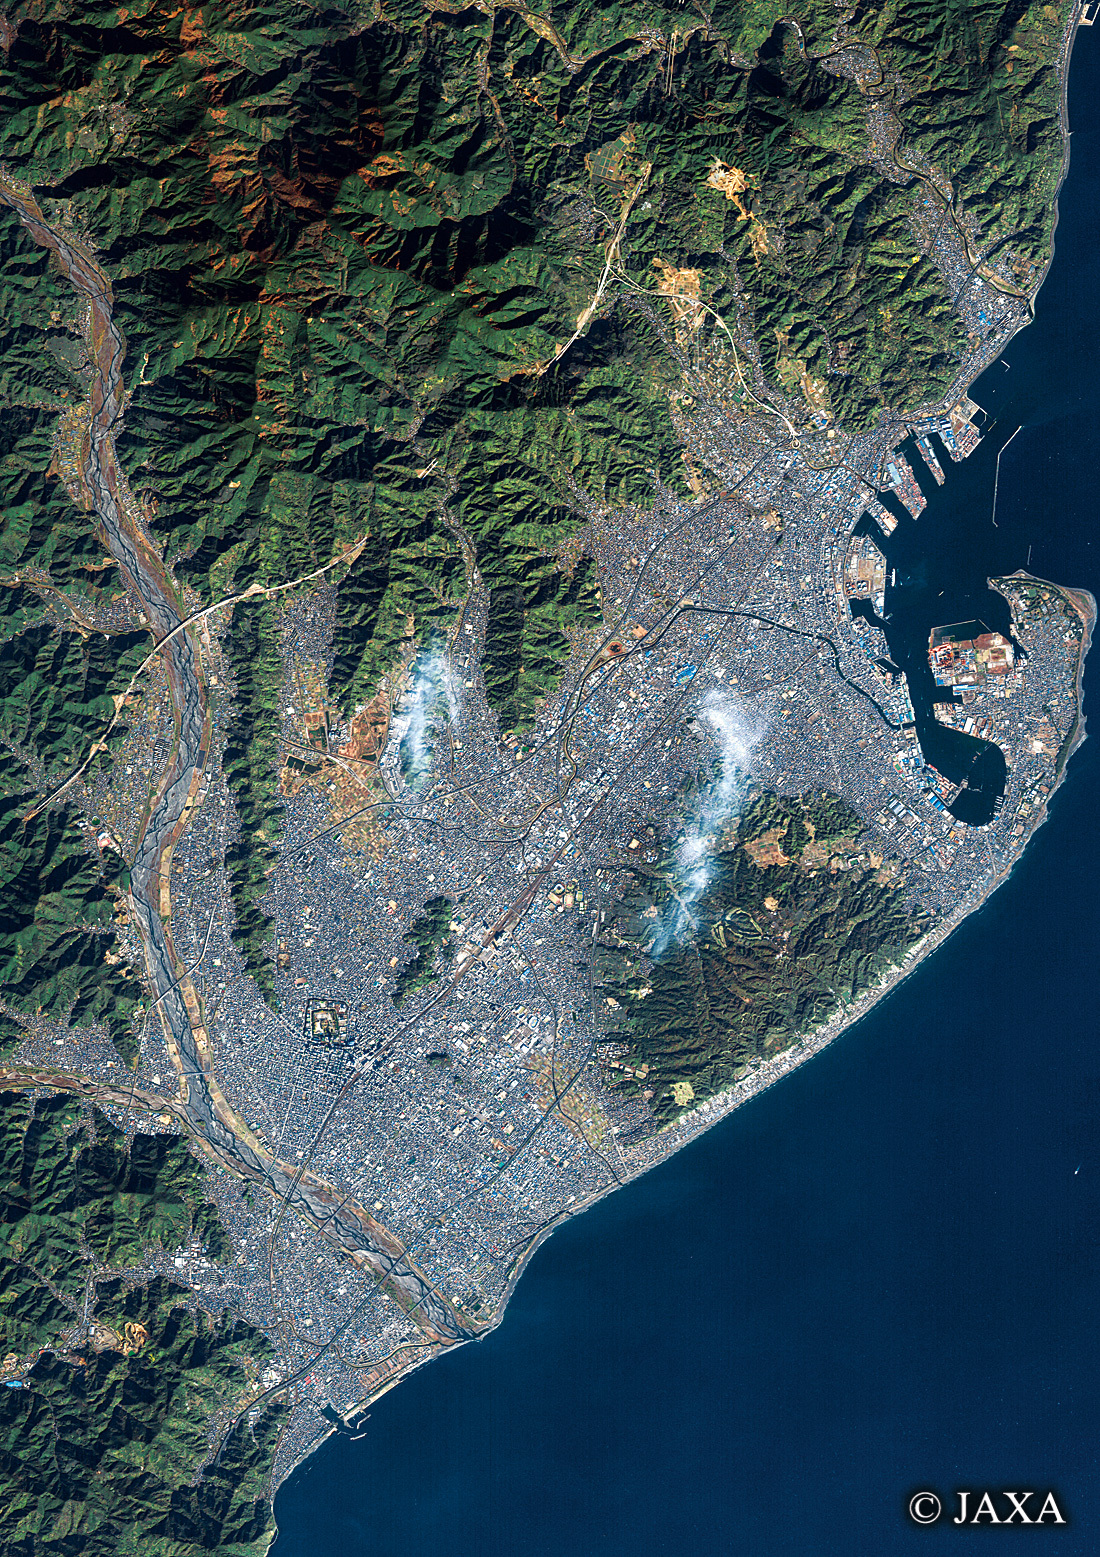 だいちから見た日本の都市 静岡市周辺:衛星画像